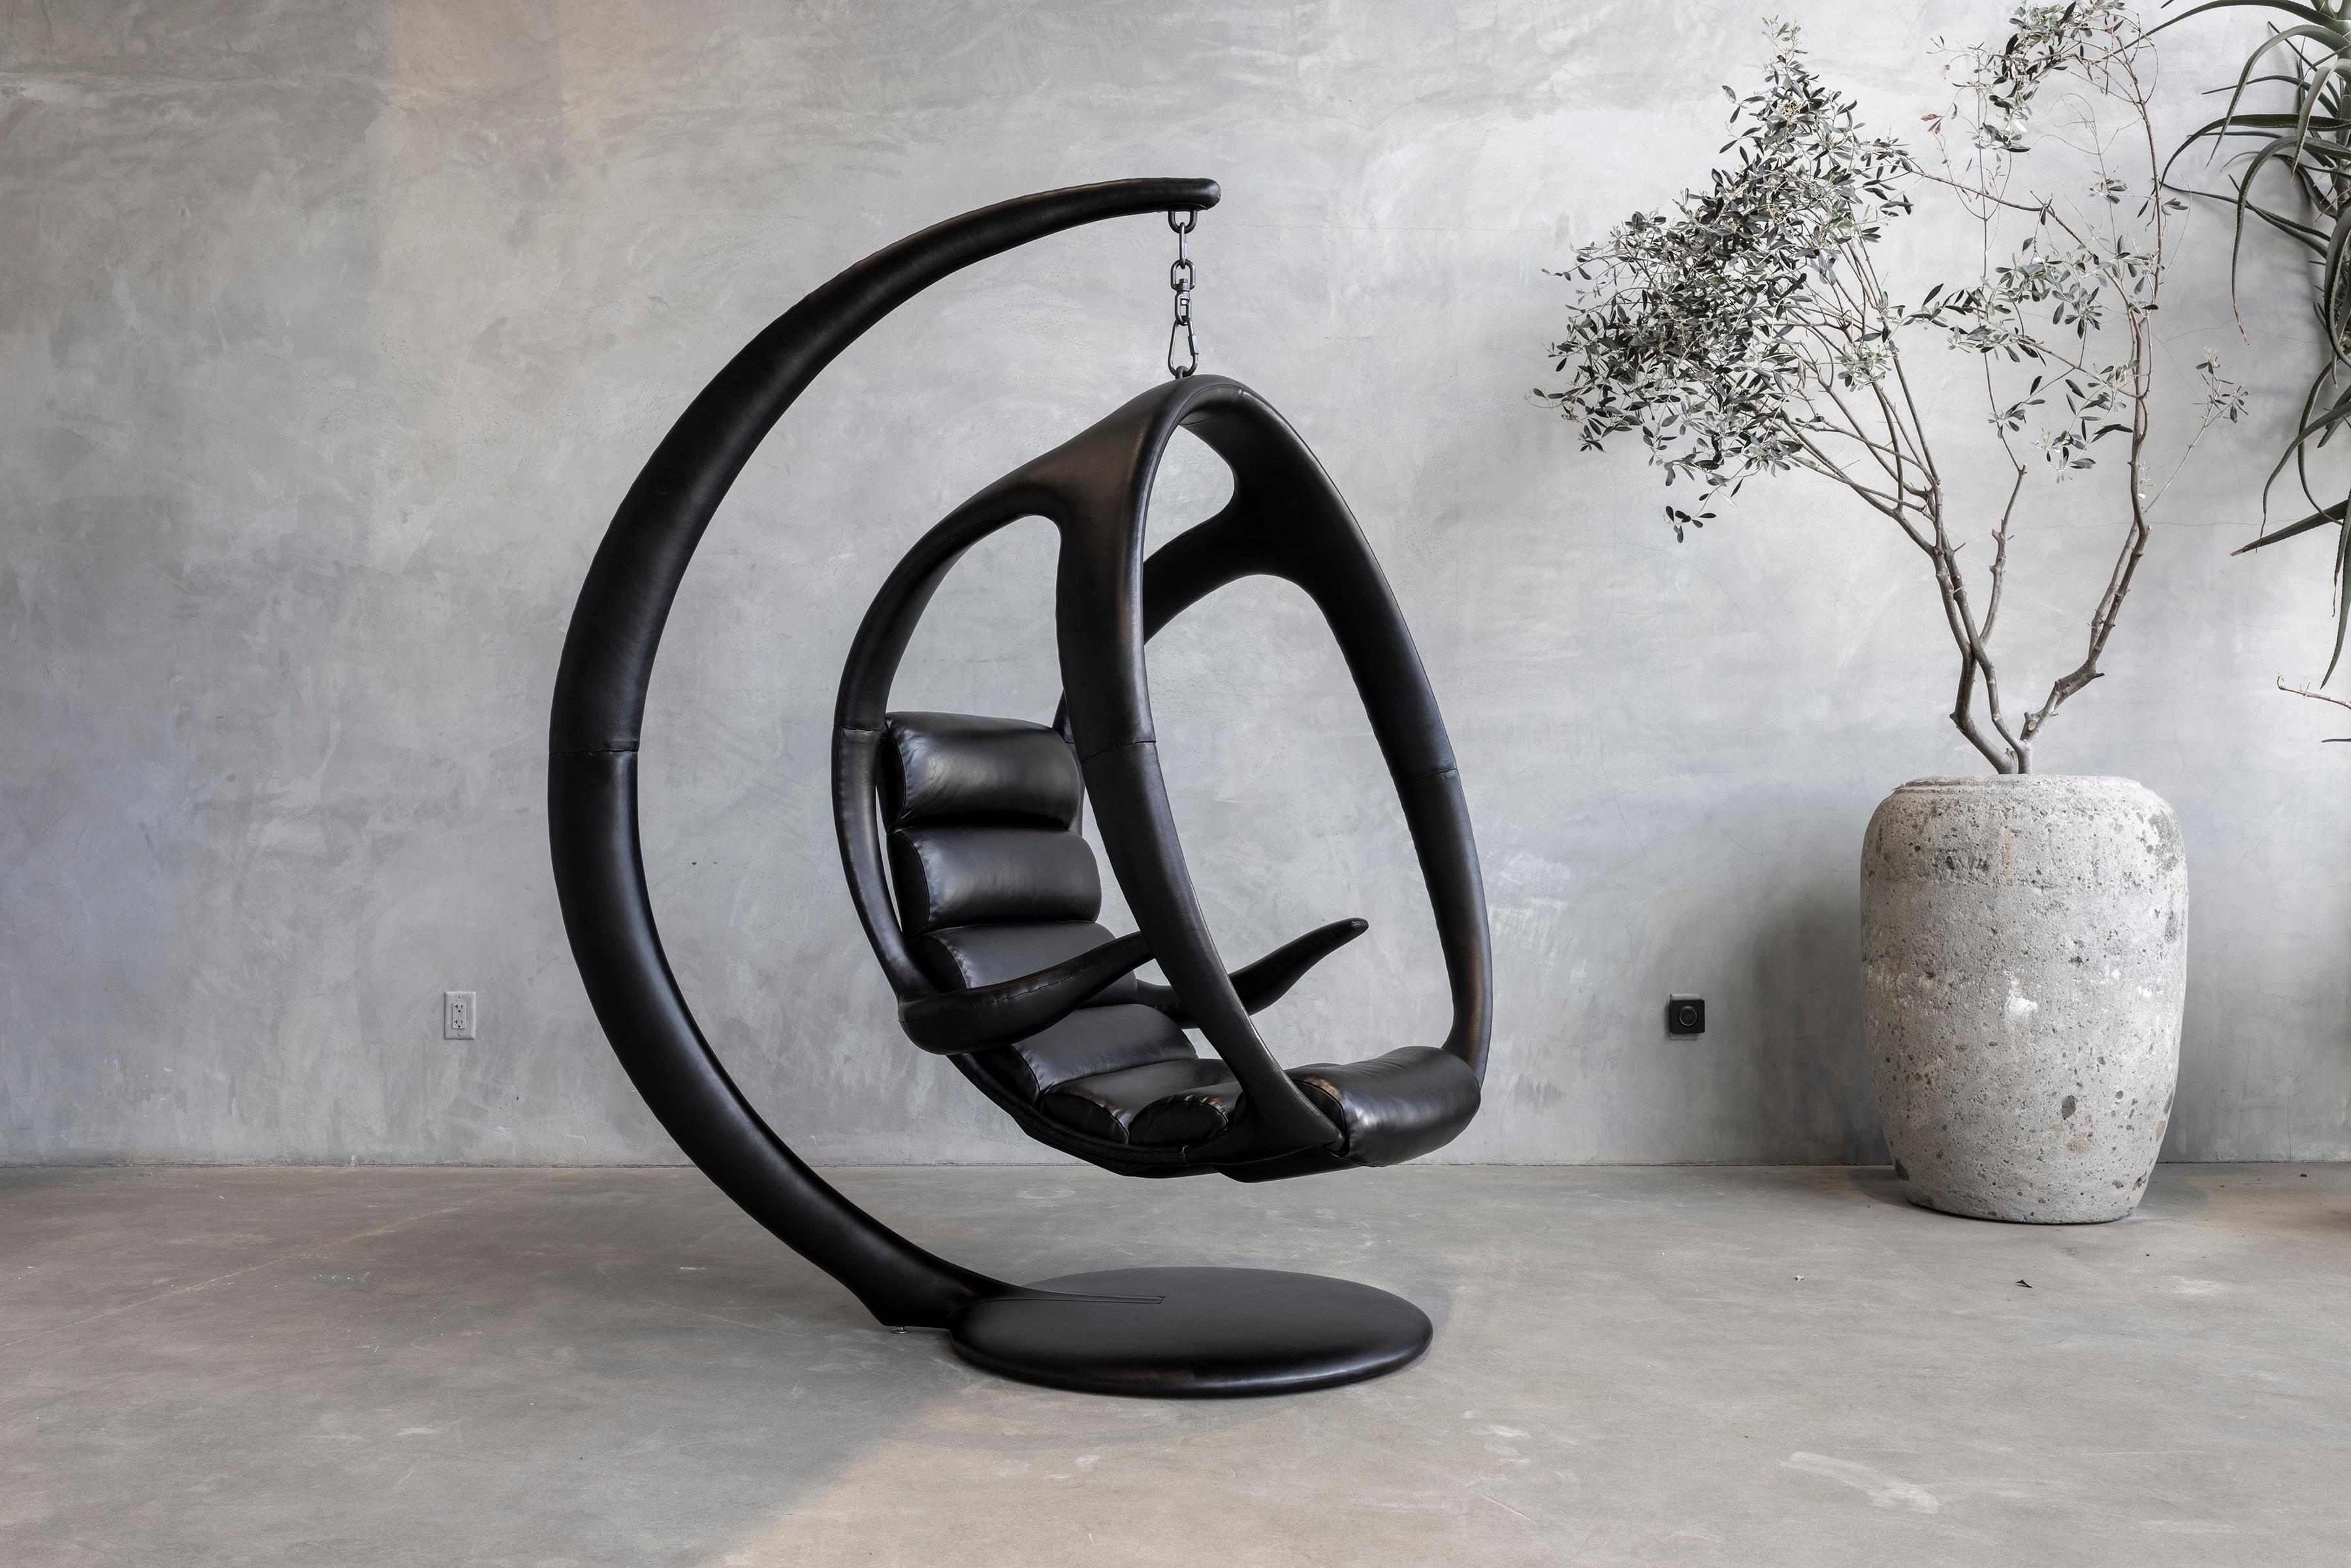 Incroyable pièce de la Collection S de William Emmerson - le Leather Hanging Pod Chair.

Construit à partir d'un substrat en acier solide qui est ensuite enveloppé dans du cuir français teinté à la main, y compris la base et l'assise flottante.  La